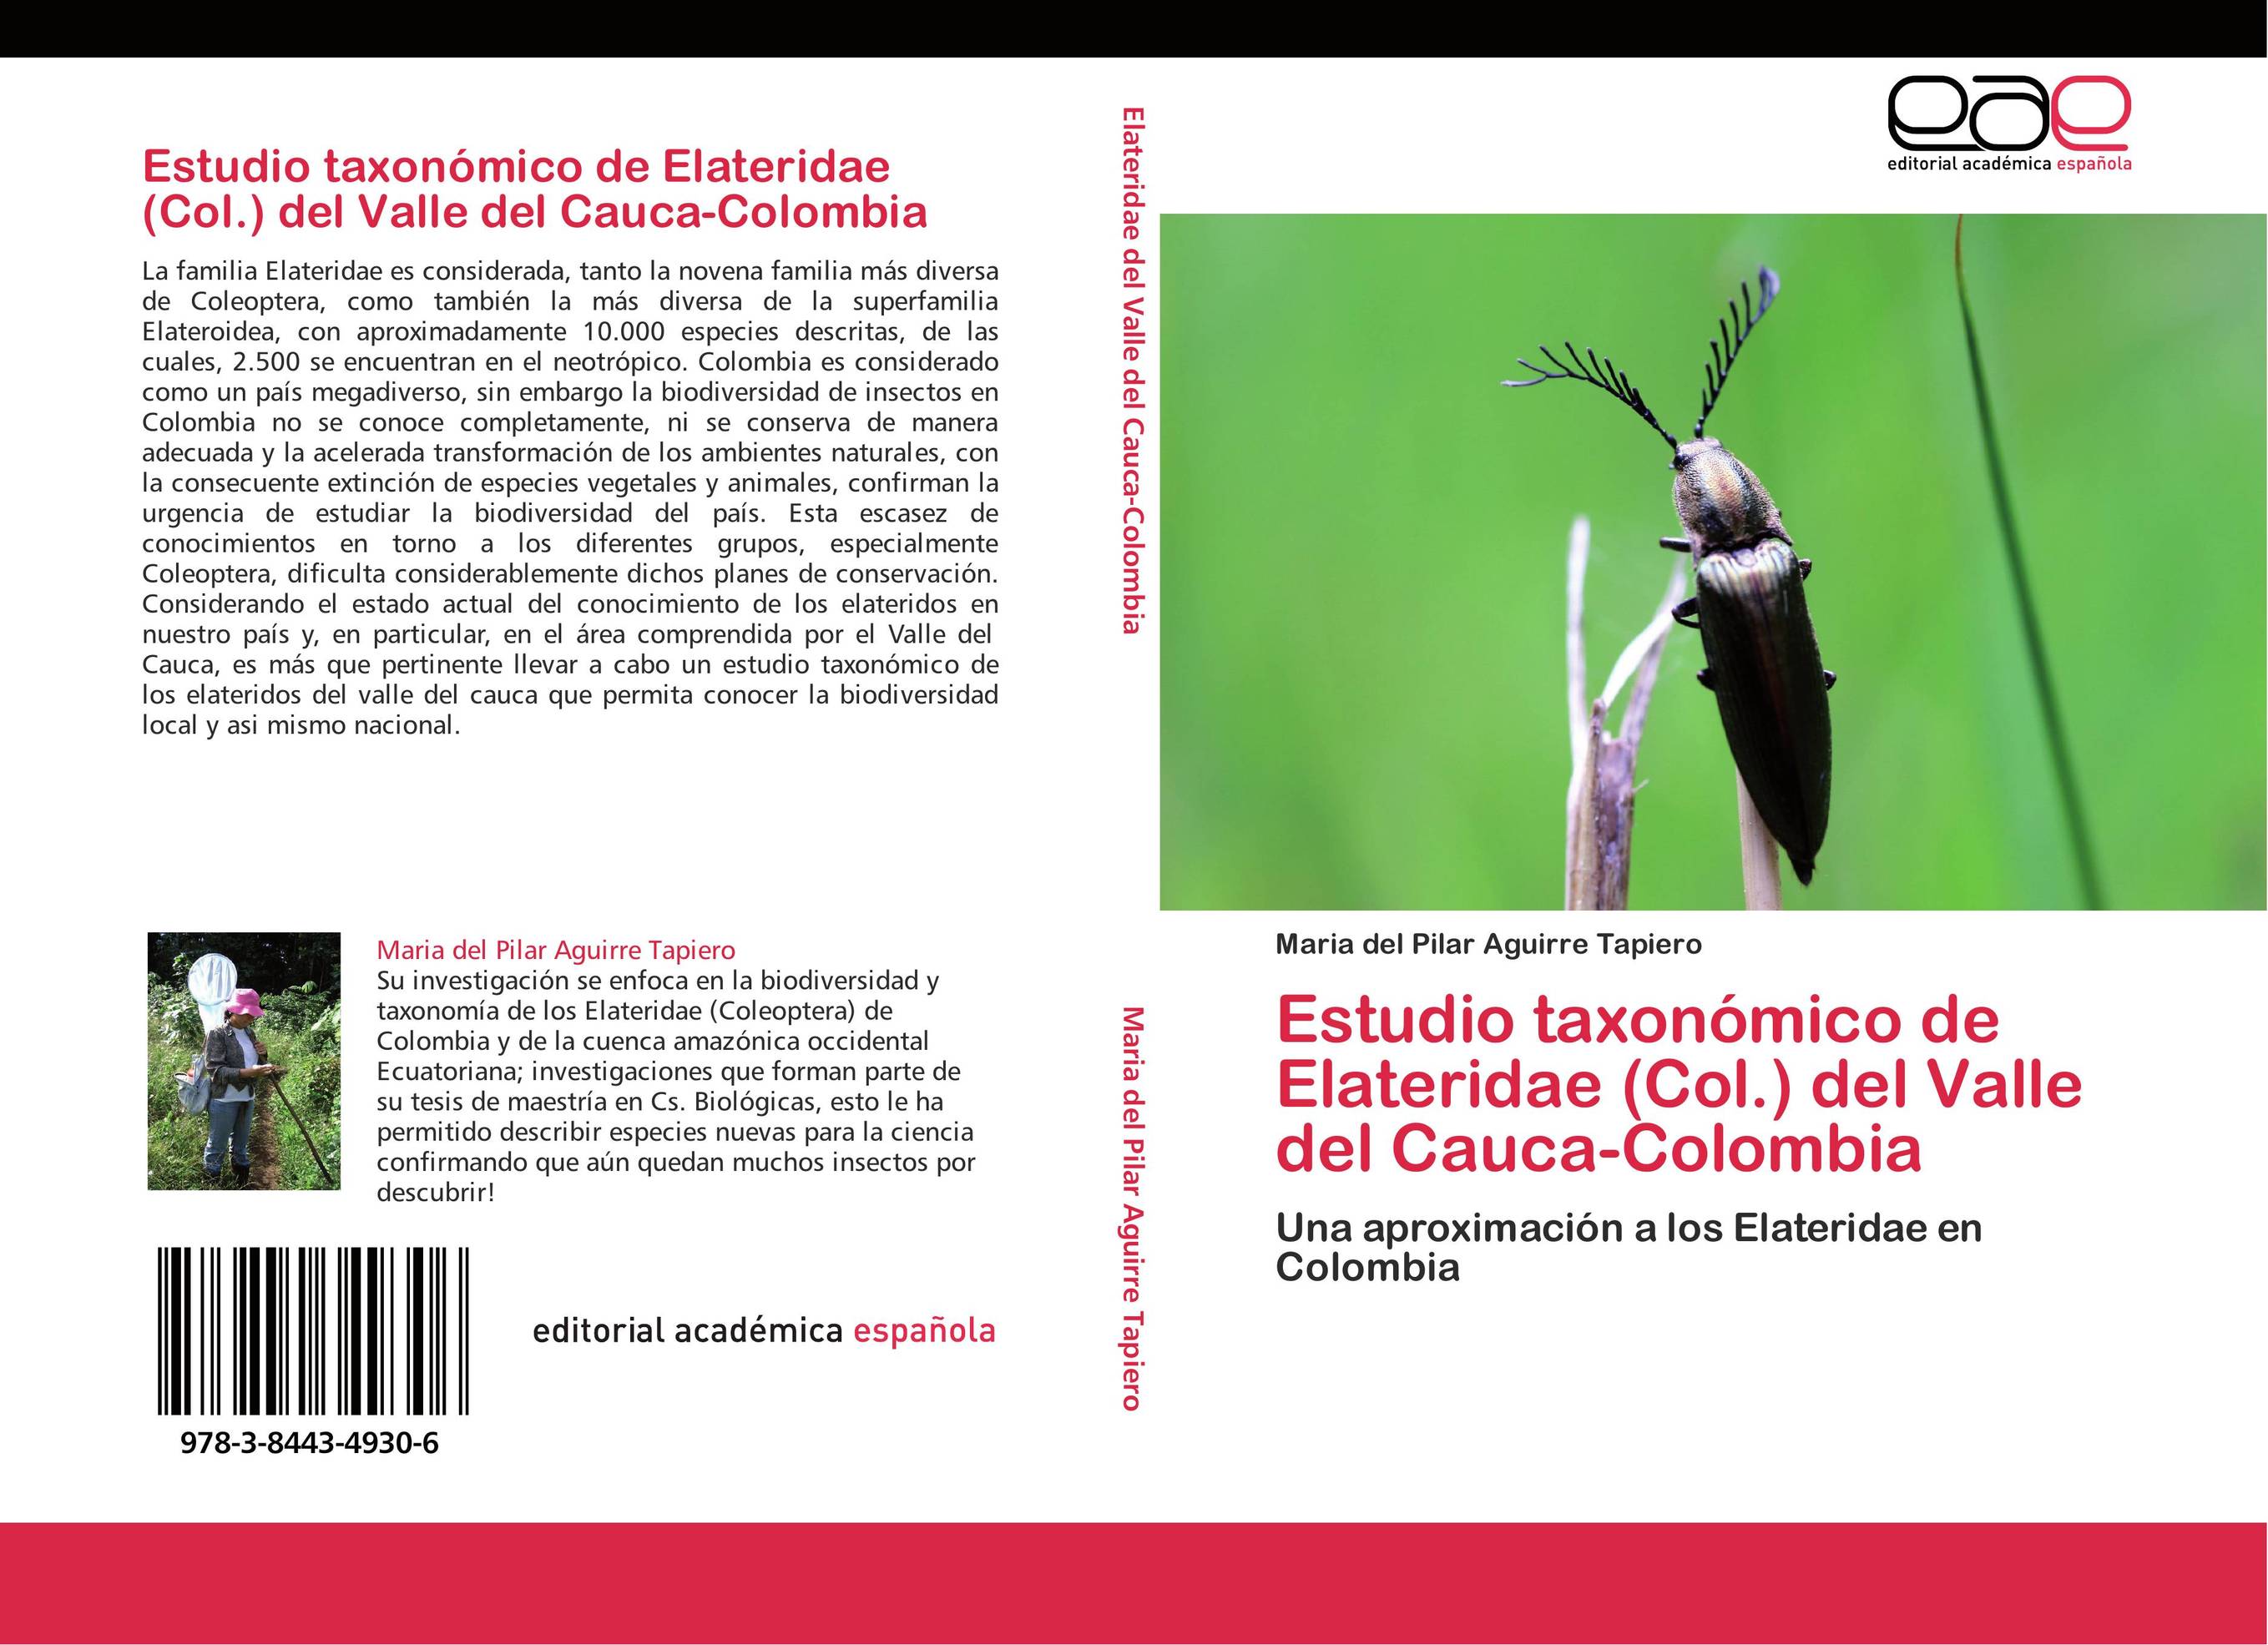 Estudio taxonómico de Elateridae (Col.) del Valle del Cauca-Colombia